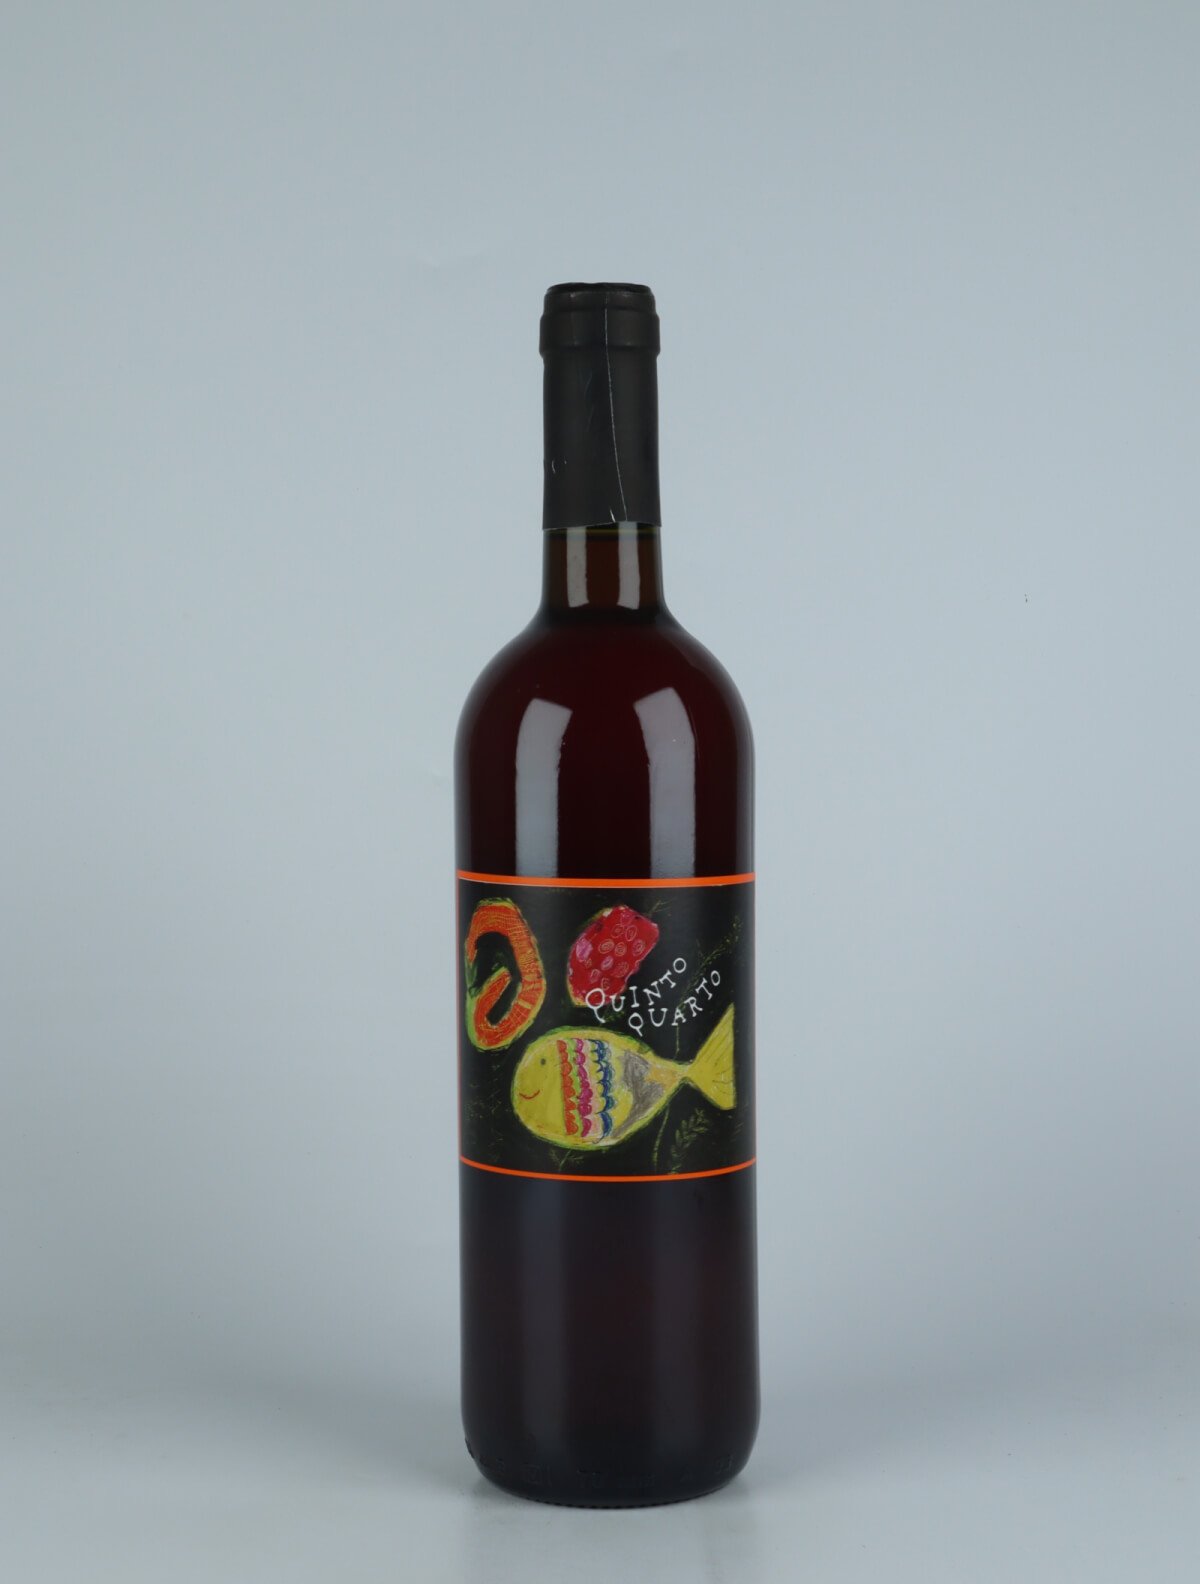 A bottle 2022 Quinto Quarto Bianco Sivi Orange wine from Franco Terpin, Friuli in Italy